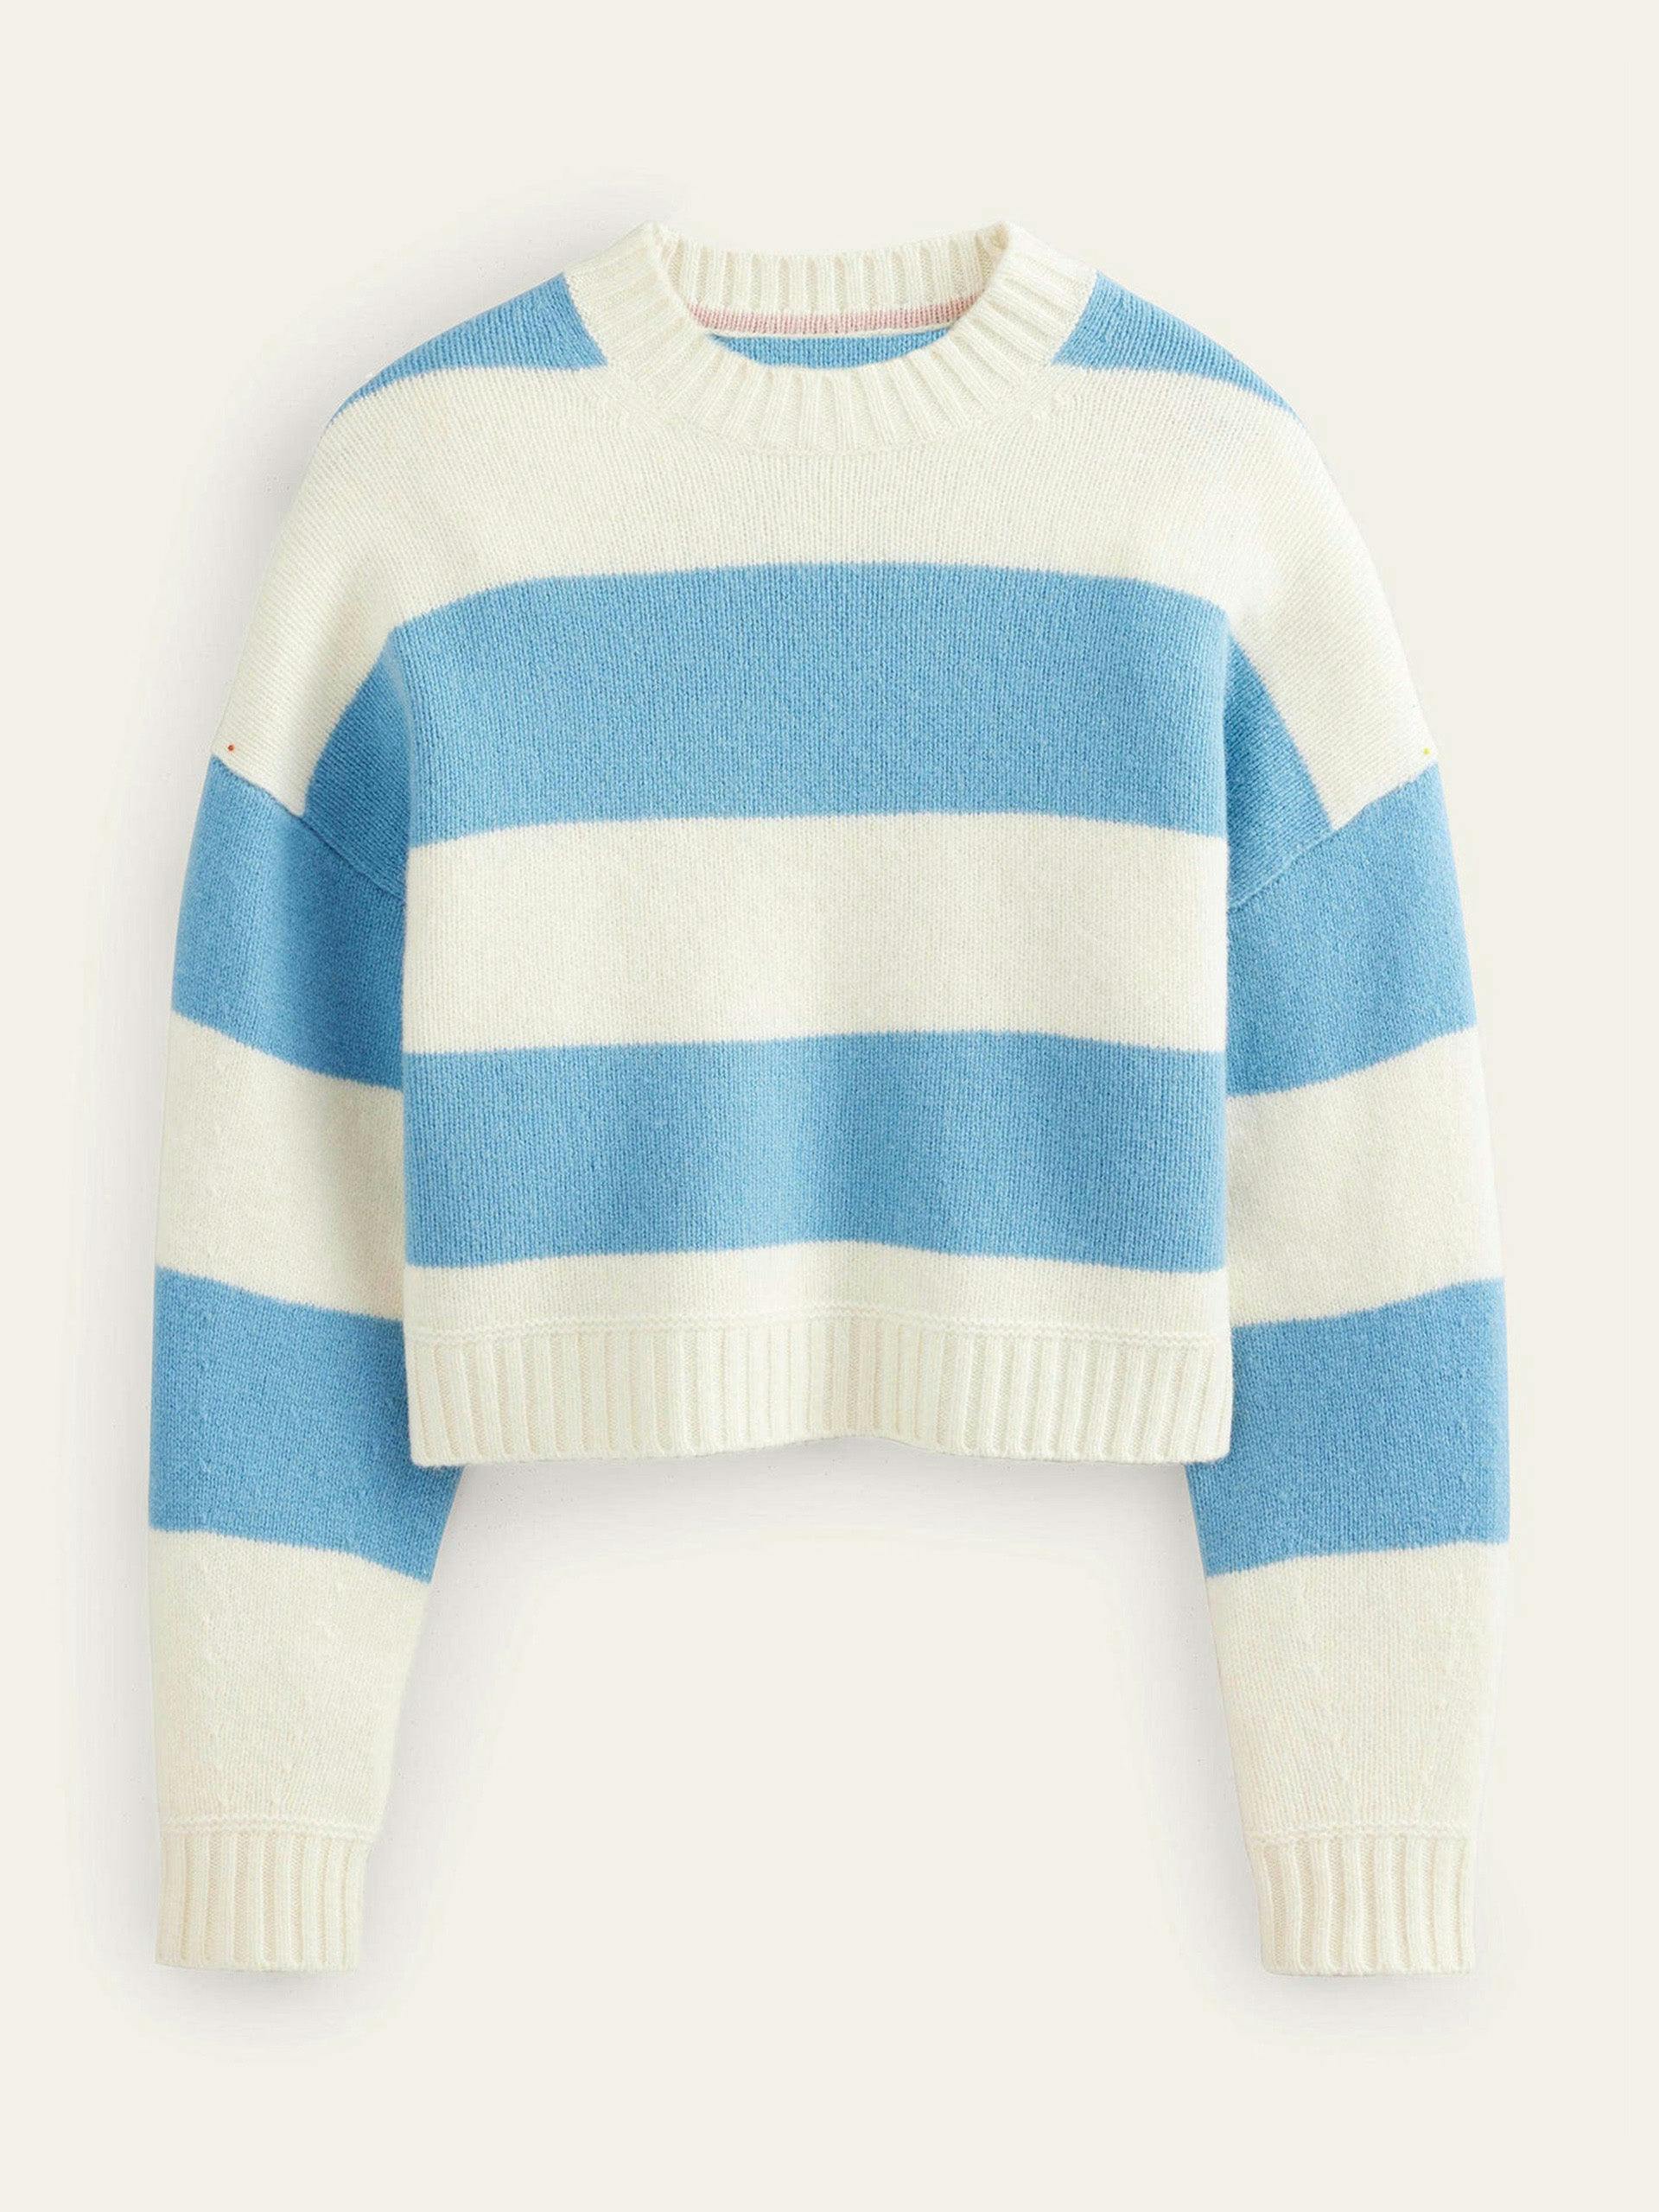 Brushed striped jumper